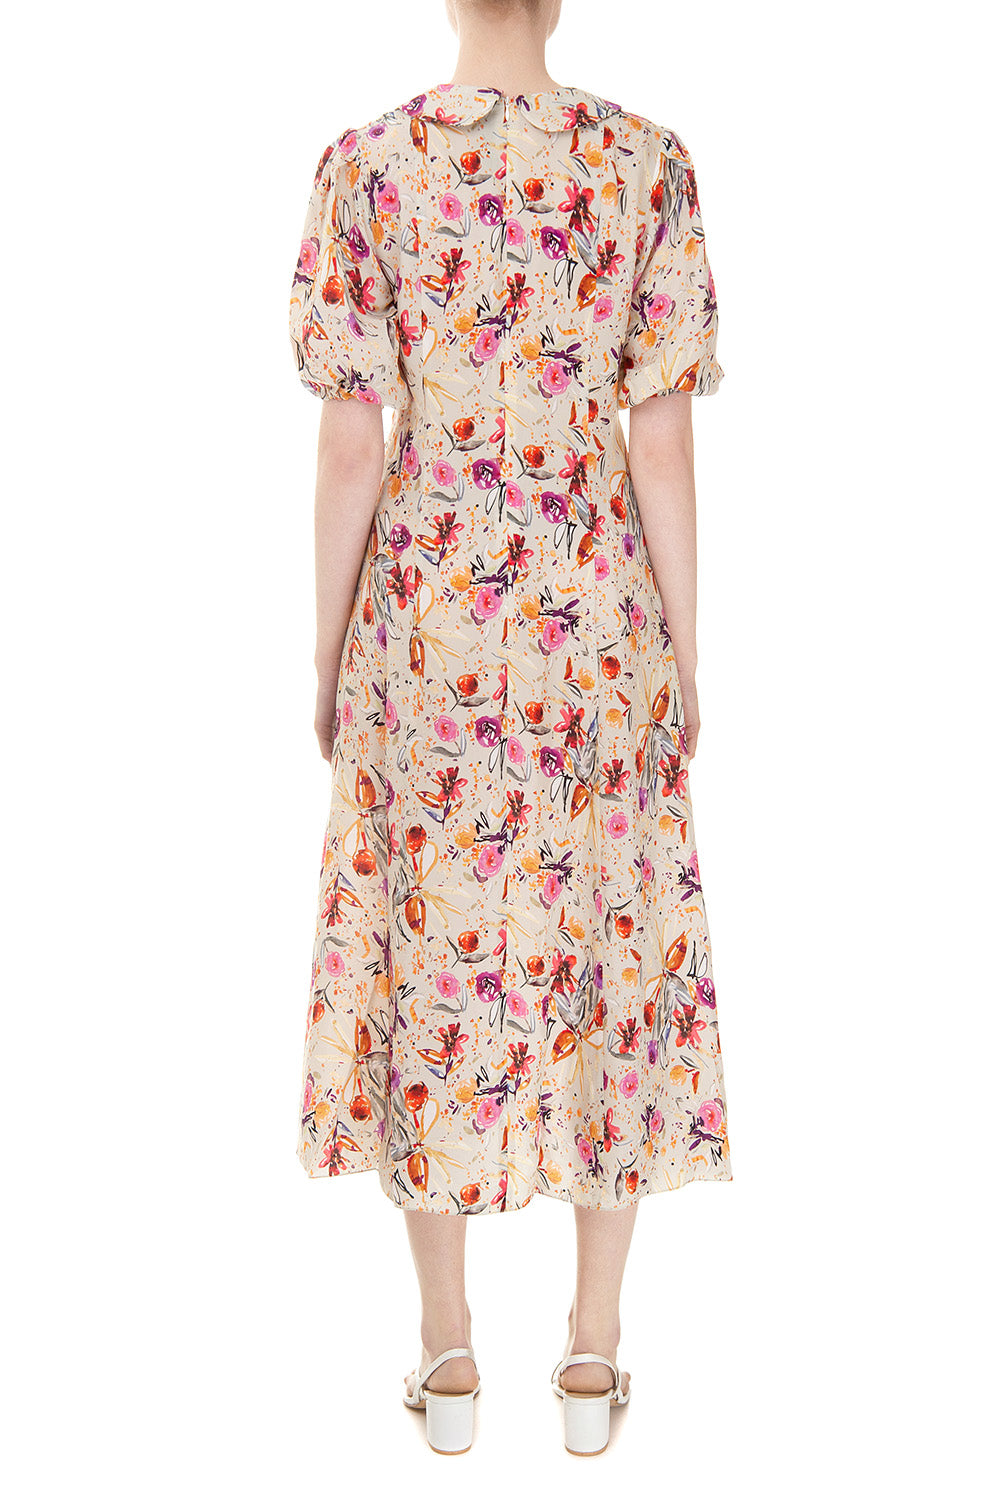 Фісташкова сукня з квітковим принтом 